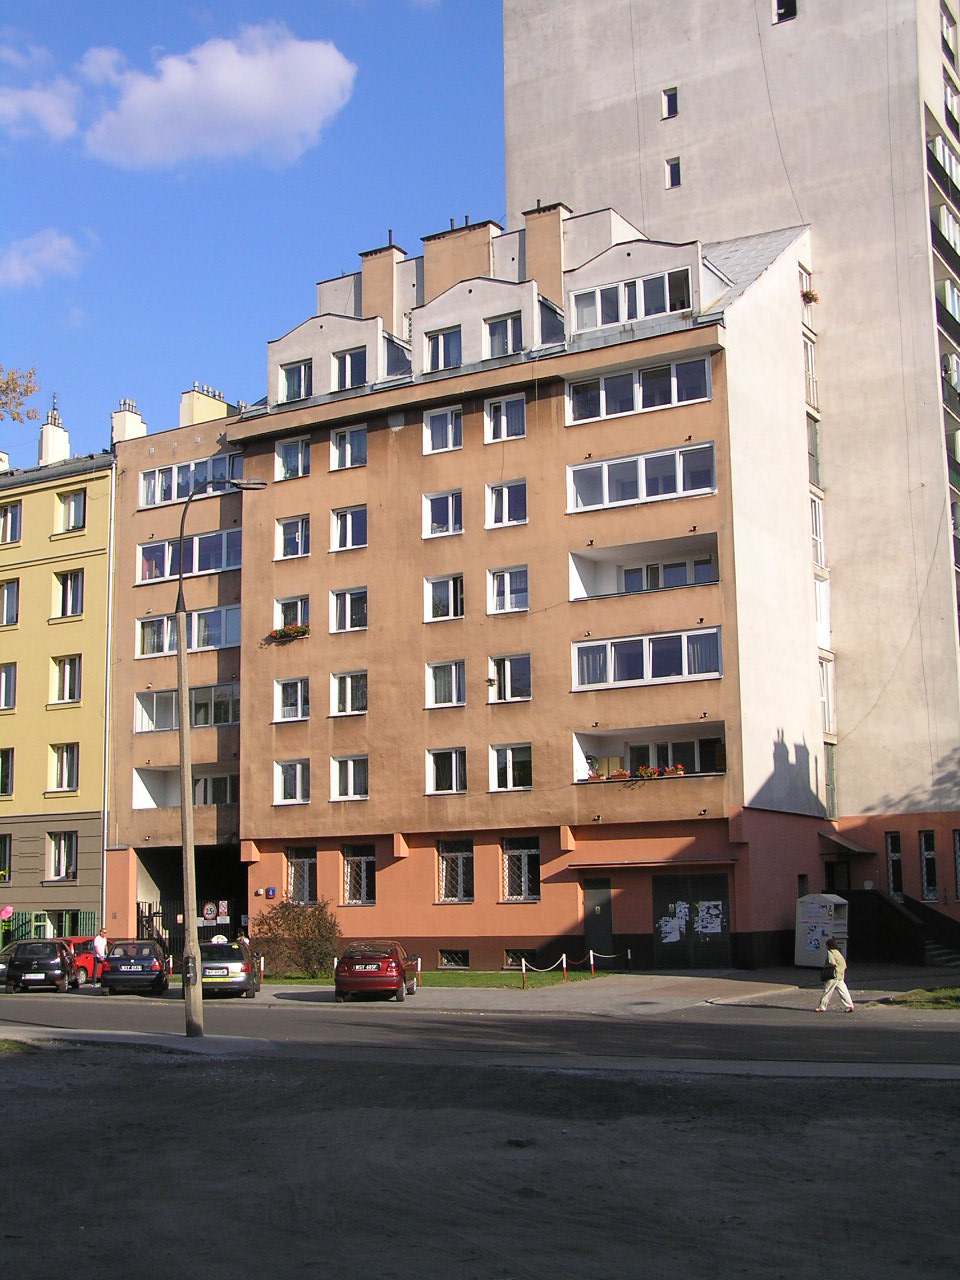 Skaryszewska 4 w Warszawie